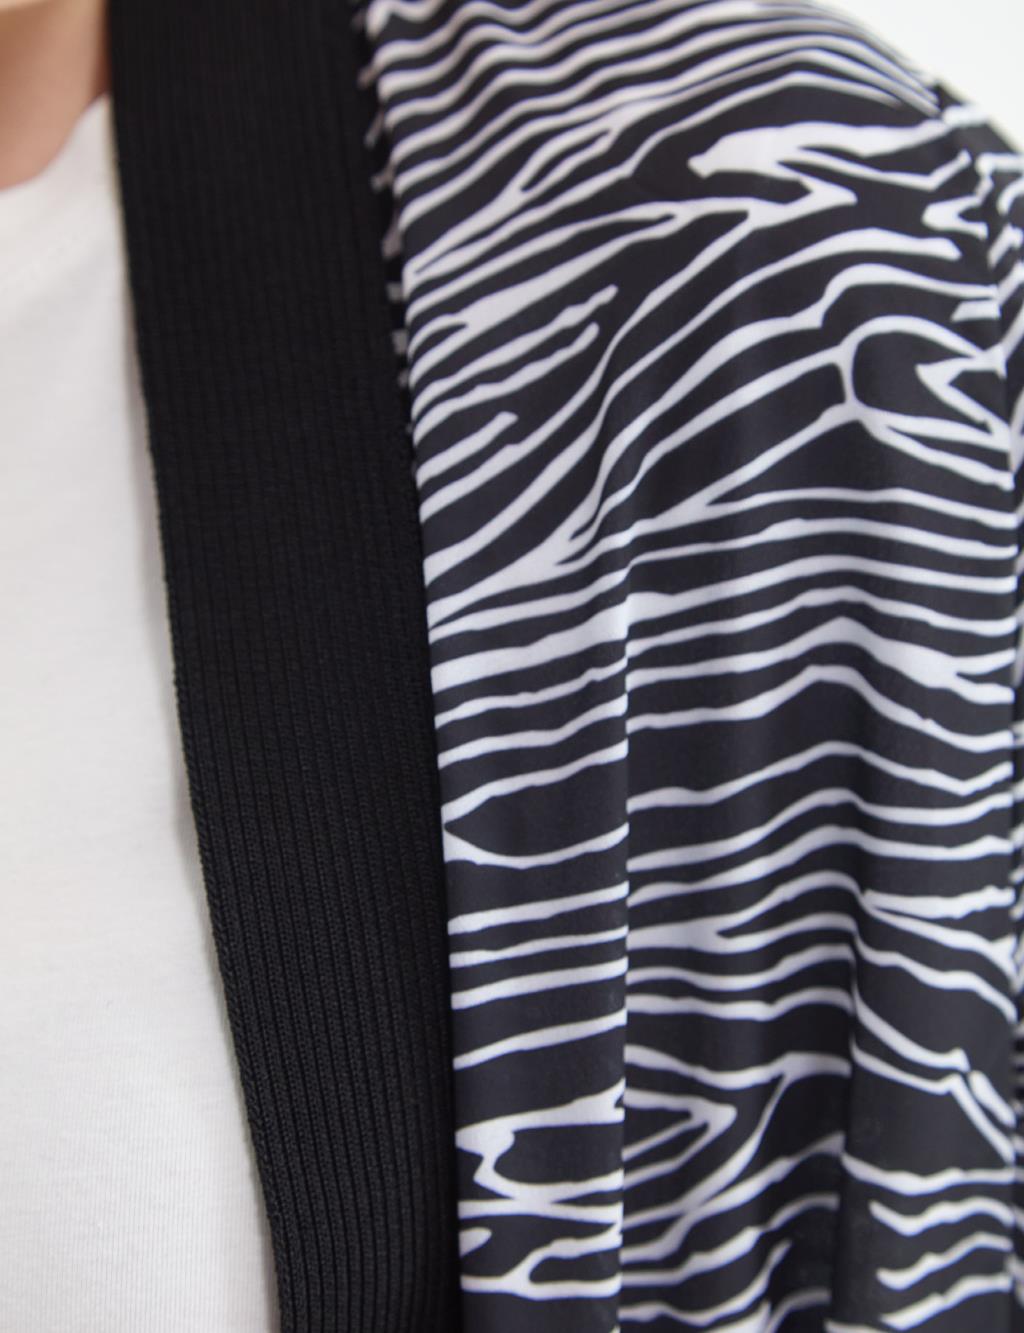 Zebra Pattern Knitwear Cardigan Black